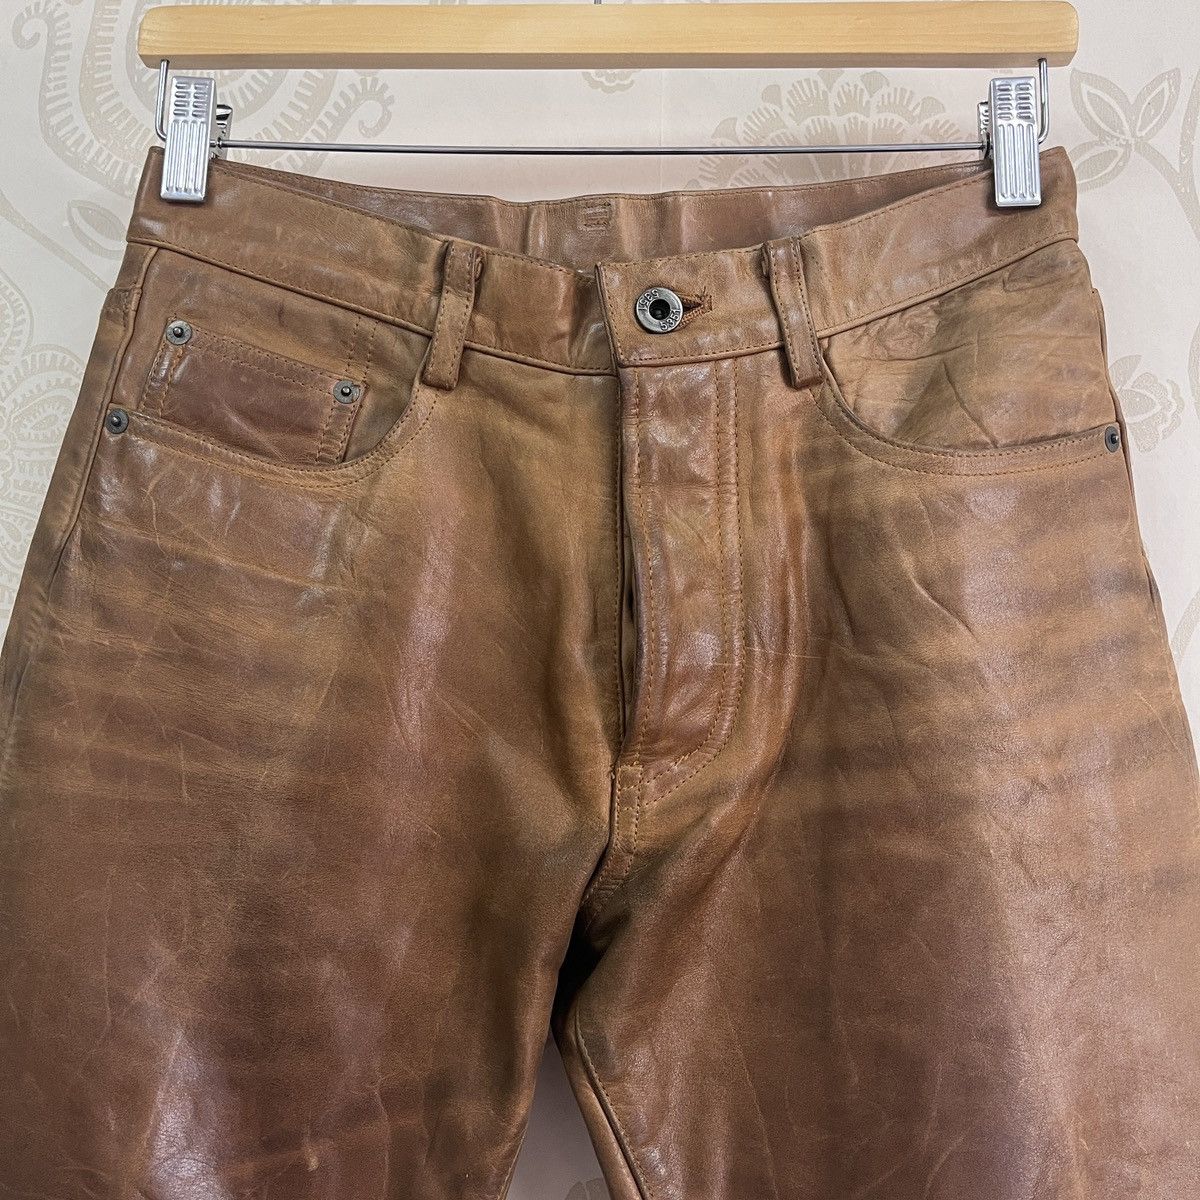 Genuine Leather - Japan 5351 Pour Les Homme Leather Pants - 20